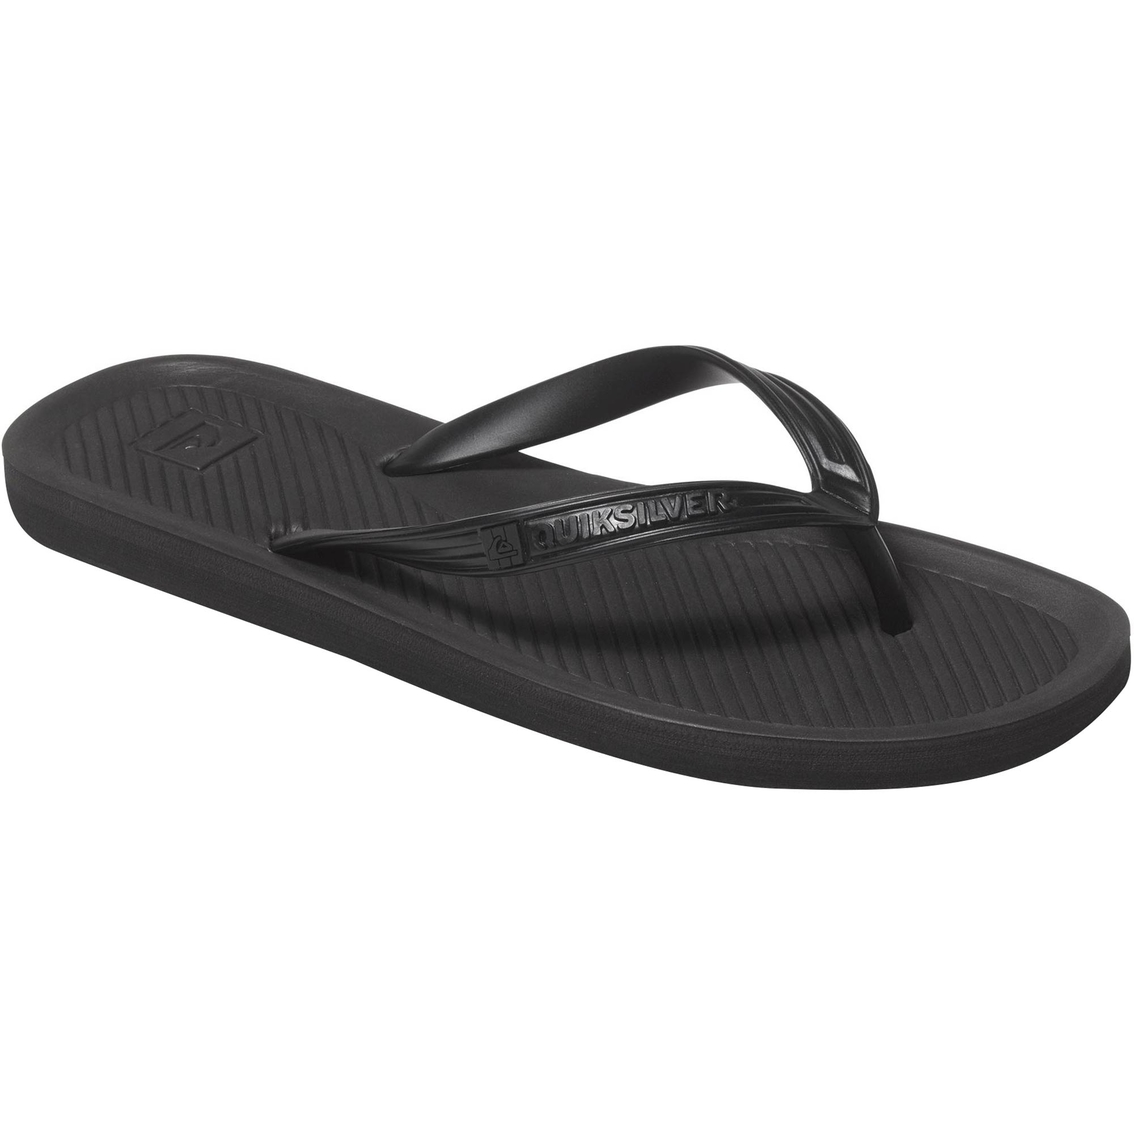 Quiksilver Haleiwa Sandals | Sandals & Flip Flops | Shoes | Shop The ...